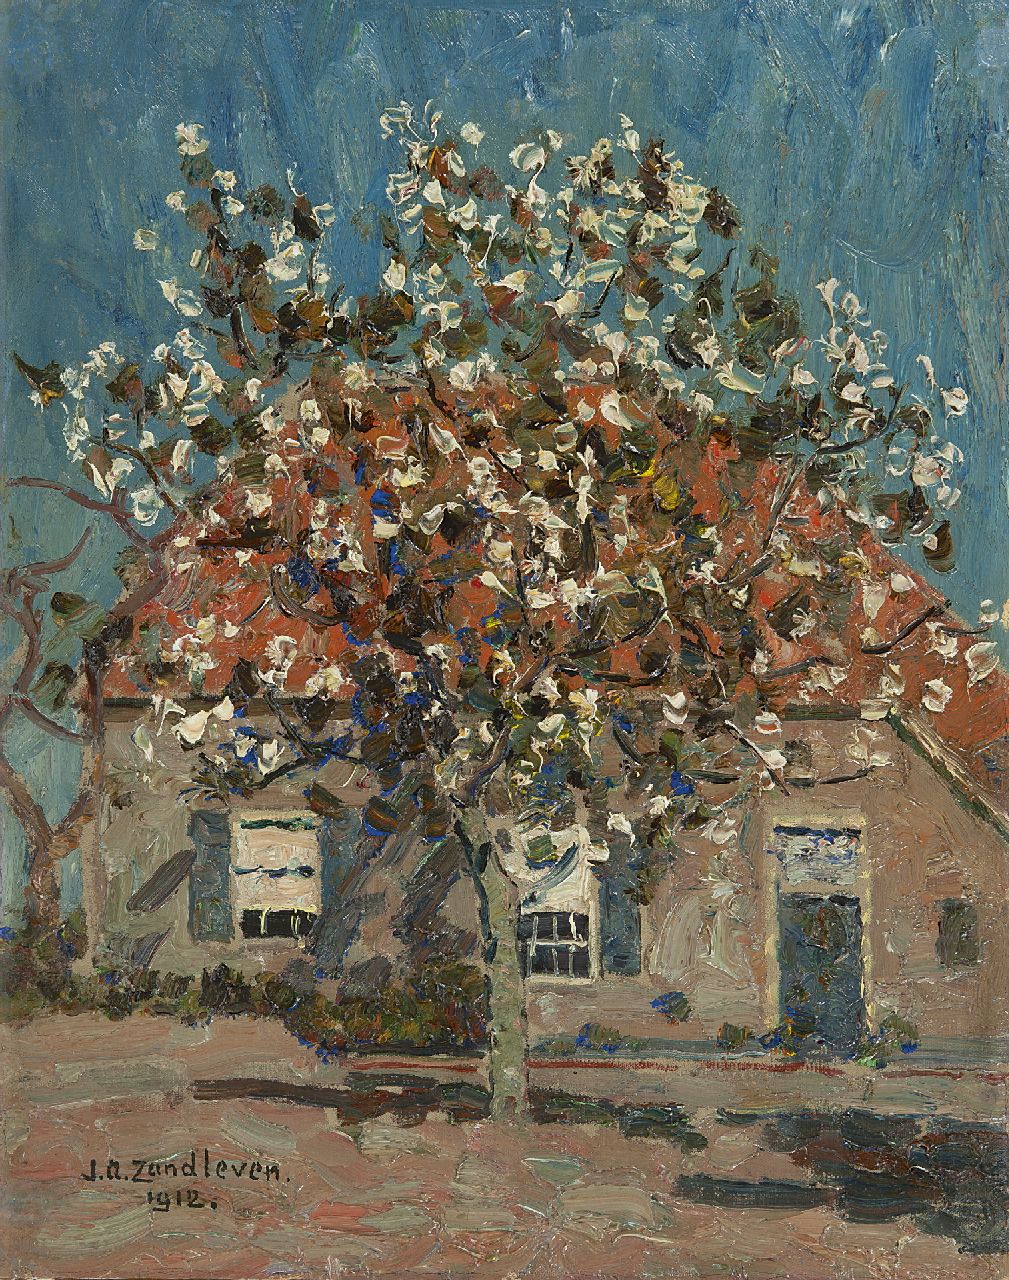 Zandleven J.A.  | Jan Adam Zandleven | Schilderijen te koop aangeboden | Bloeiende vruchtboom voor boerderij, olieverf op doek op paneel 40,2 x 32,1 cm, gesigneerd linksonder en gedateerd 1912